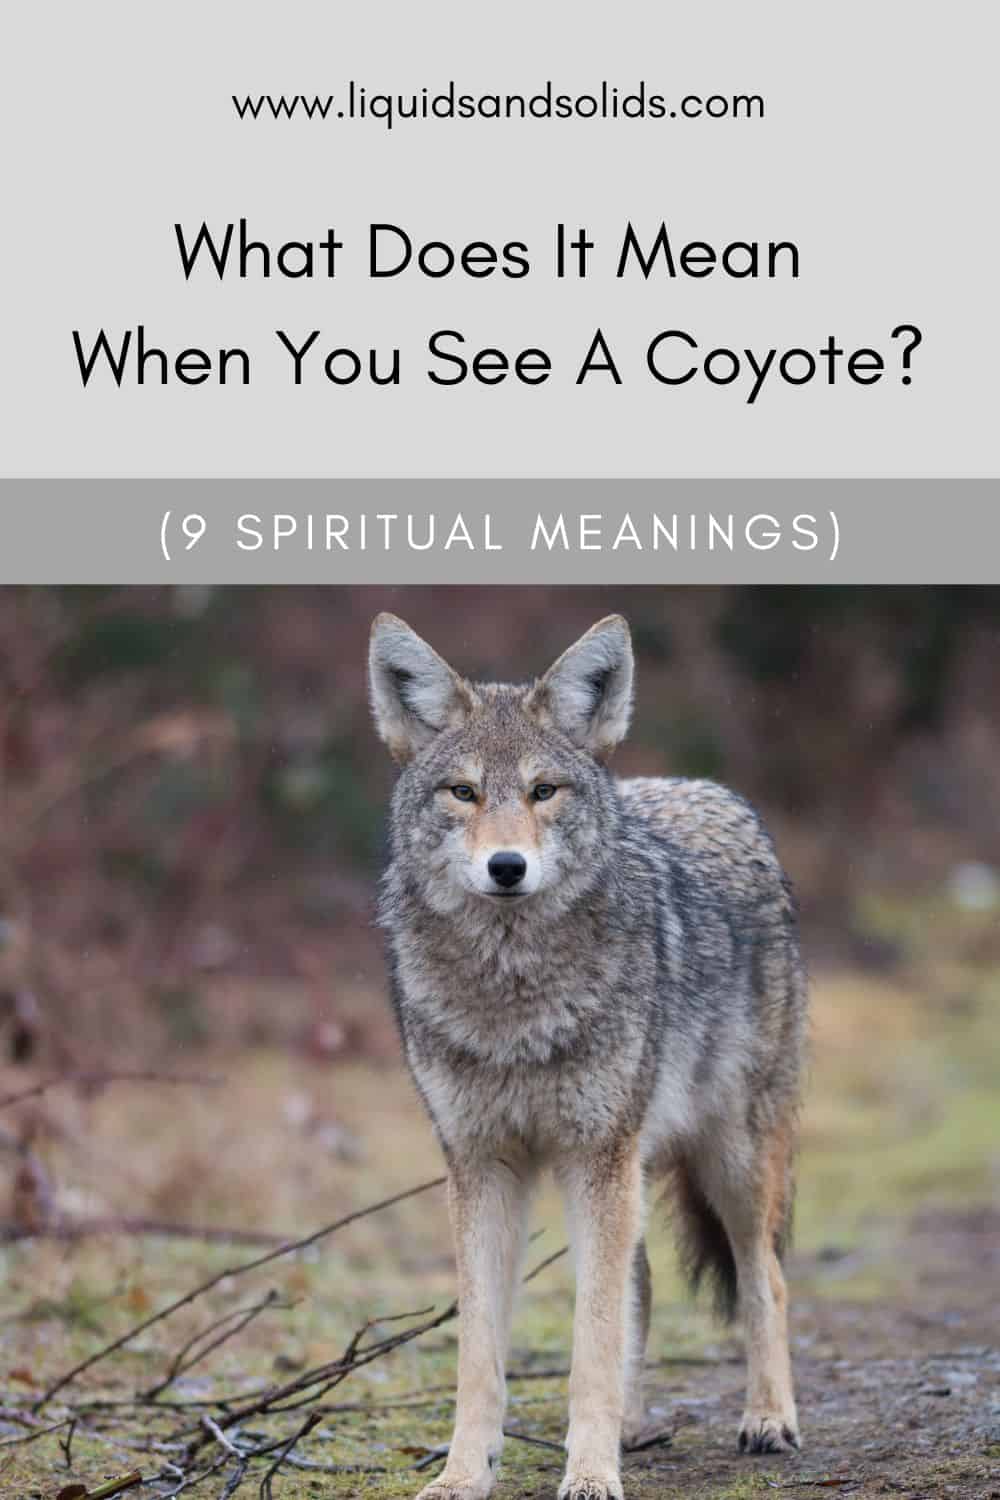  Ce que signifie voir un coyote (9 significations spirituelles)